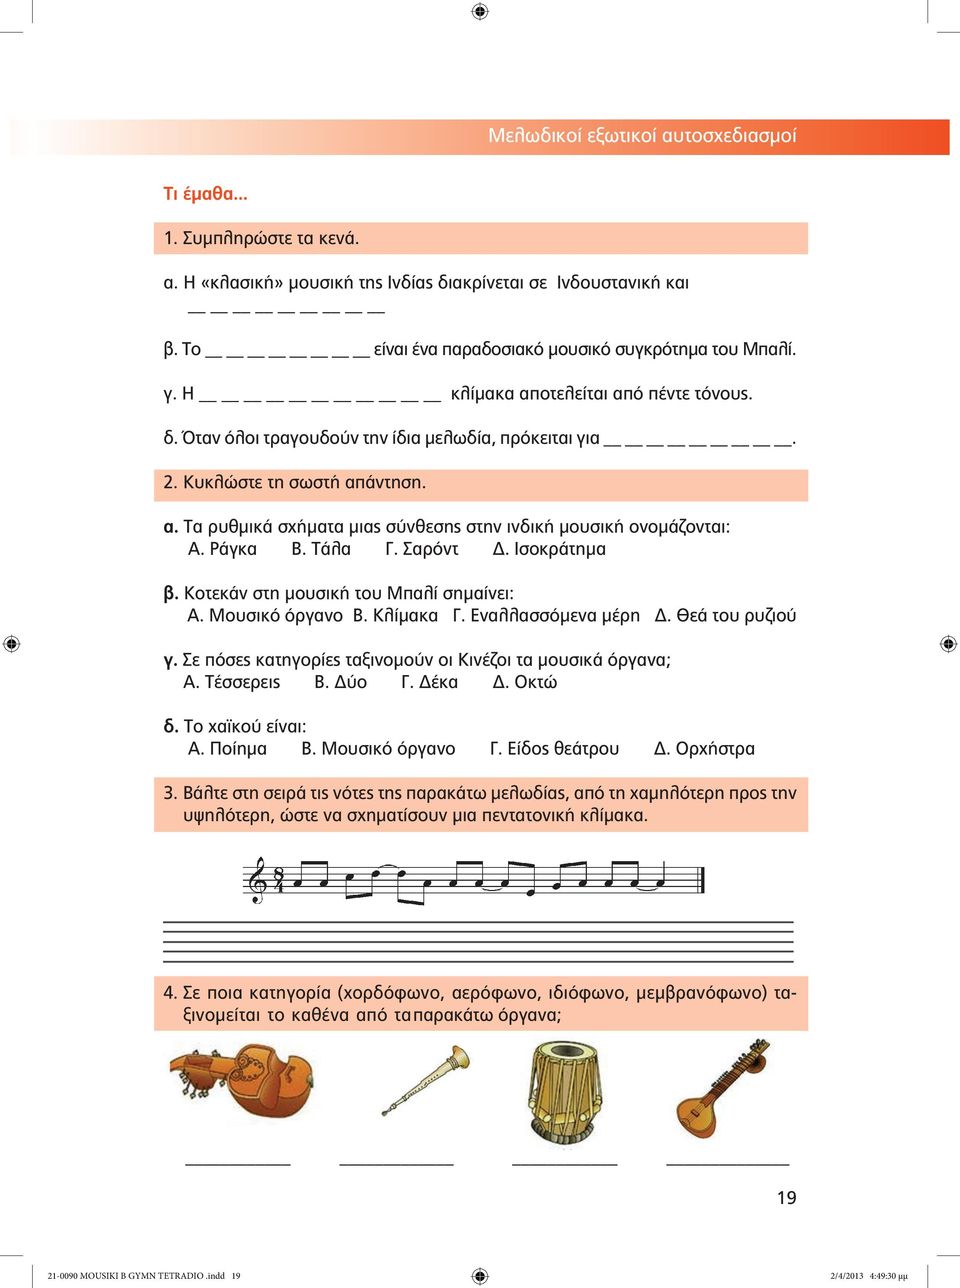 Ράγκα Β. Τάλα Γ. Σαρόντ Δ. Ισοκράτημα β. Κοτεκάν στη μουσική του Μπαλί σημαίνει: Α. Μουσικό όργανο Β. Κλίμακα Γ. Εναλλασσόμενα μέρη Δ. Θεά του ρυζιού γ.